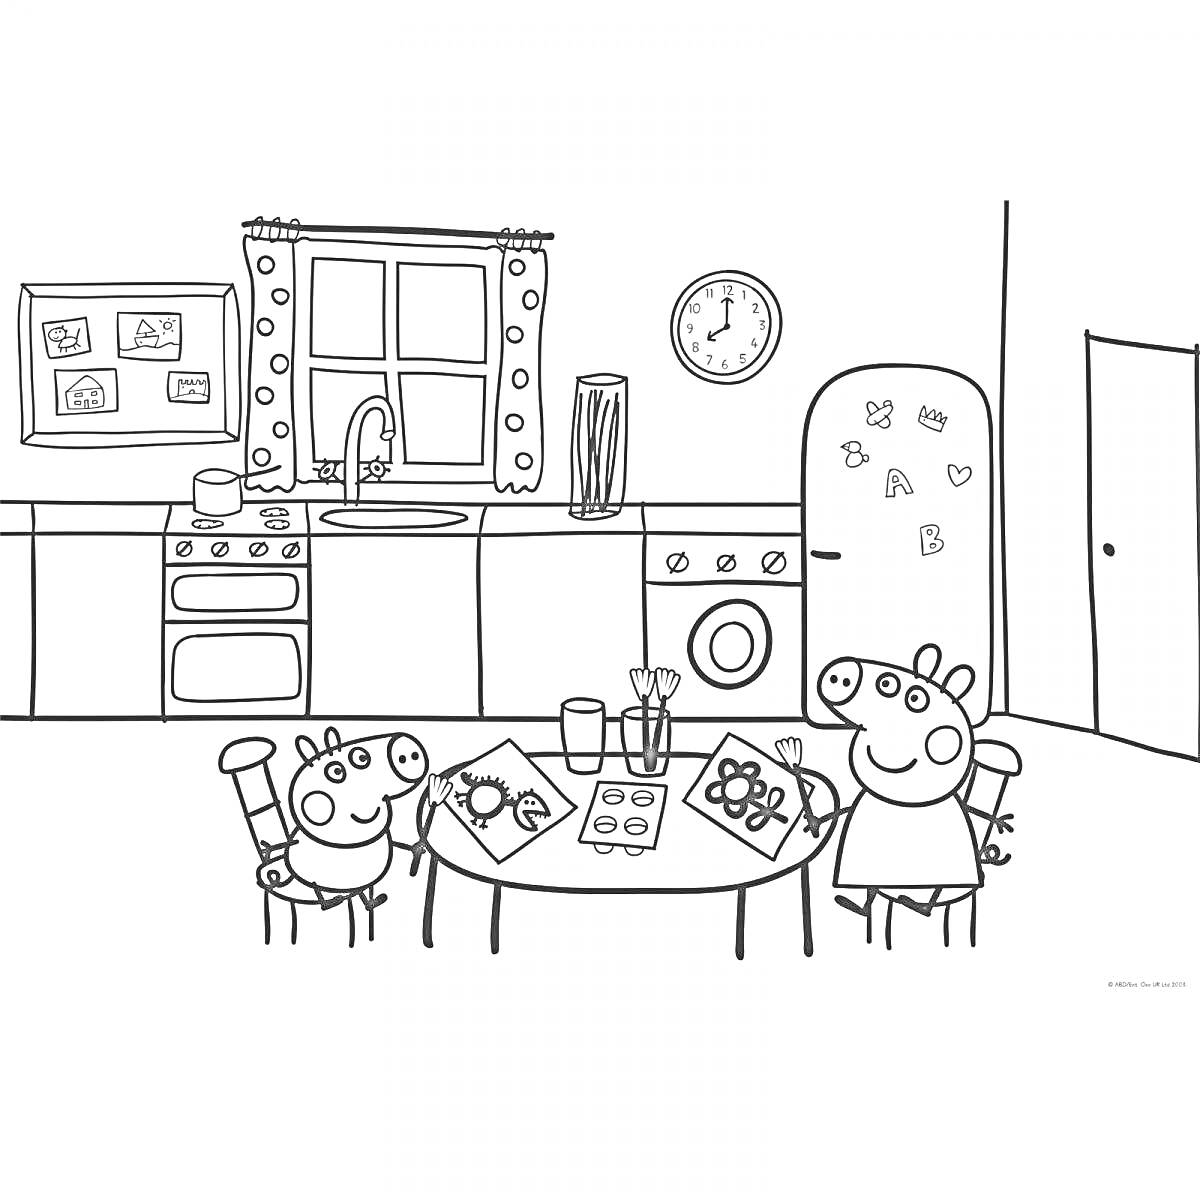 Раскраска Кухня с семьей Элементы на фото: два персонажа, стол, стулья, рисунки, кухонная мебель, холодильник, духовой шкаф, раковина, окно, часы, дверь, посуда, ножи, занавески